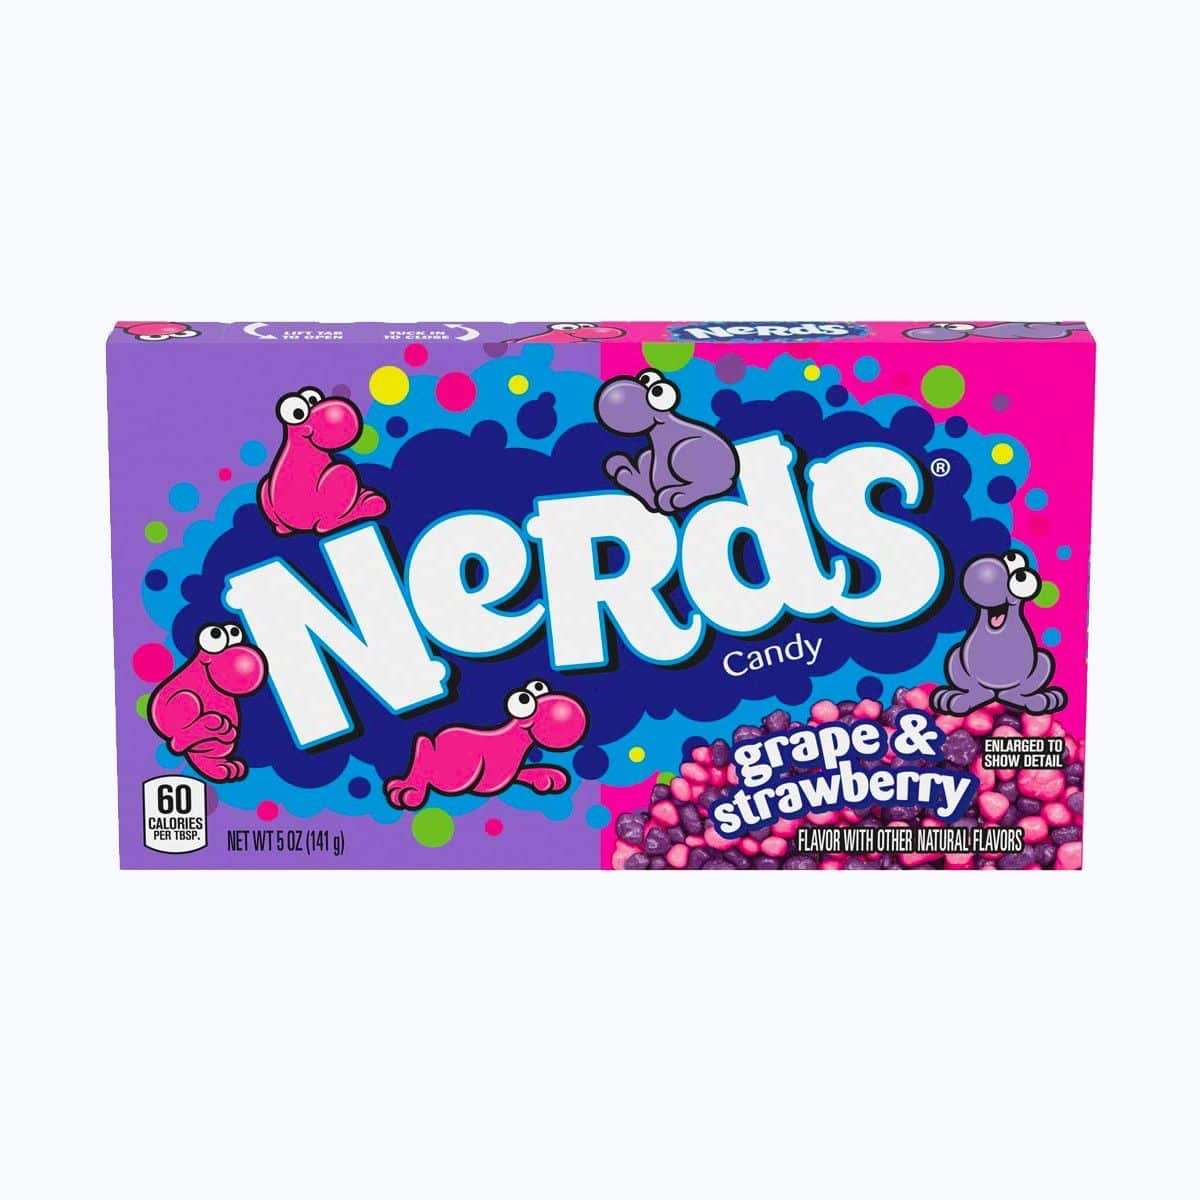 Nerds CANDY Grape & Strawberry : bonbons en forme de billes colorées